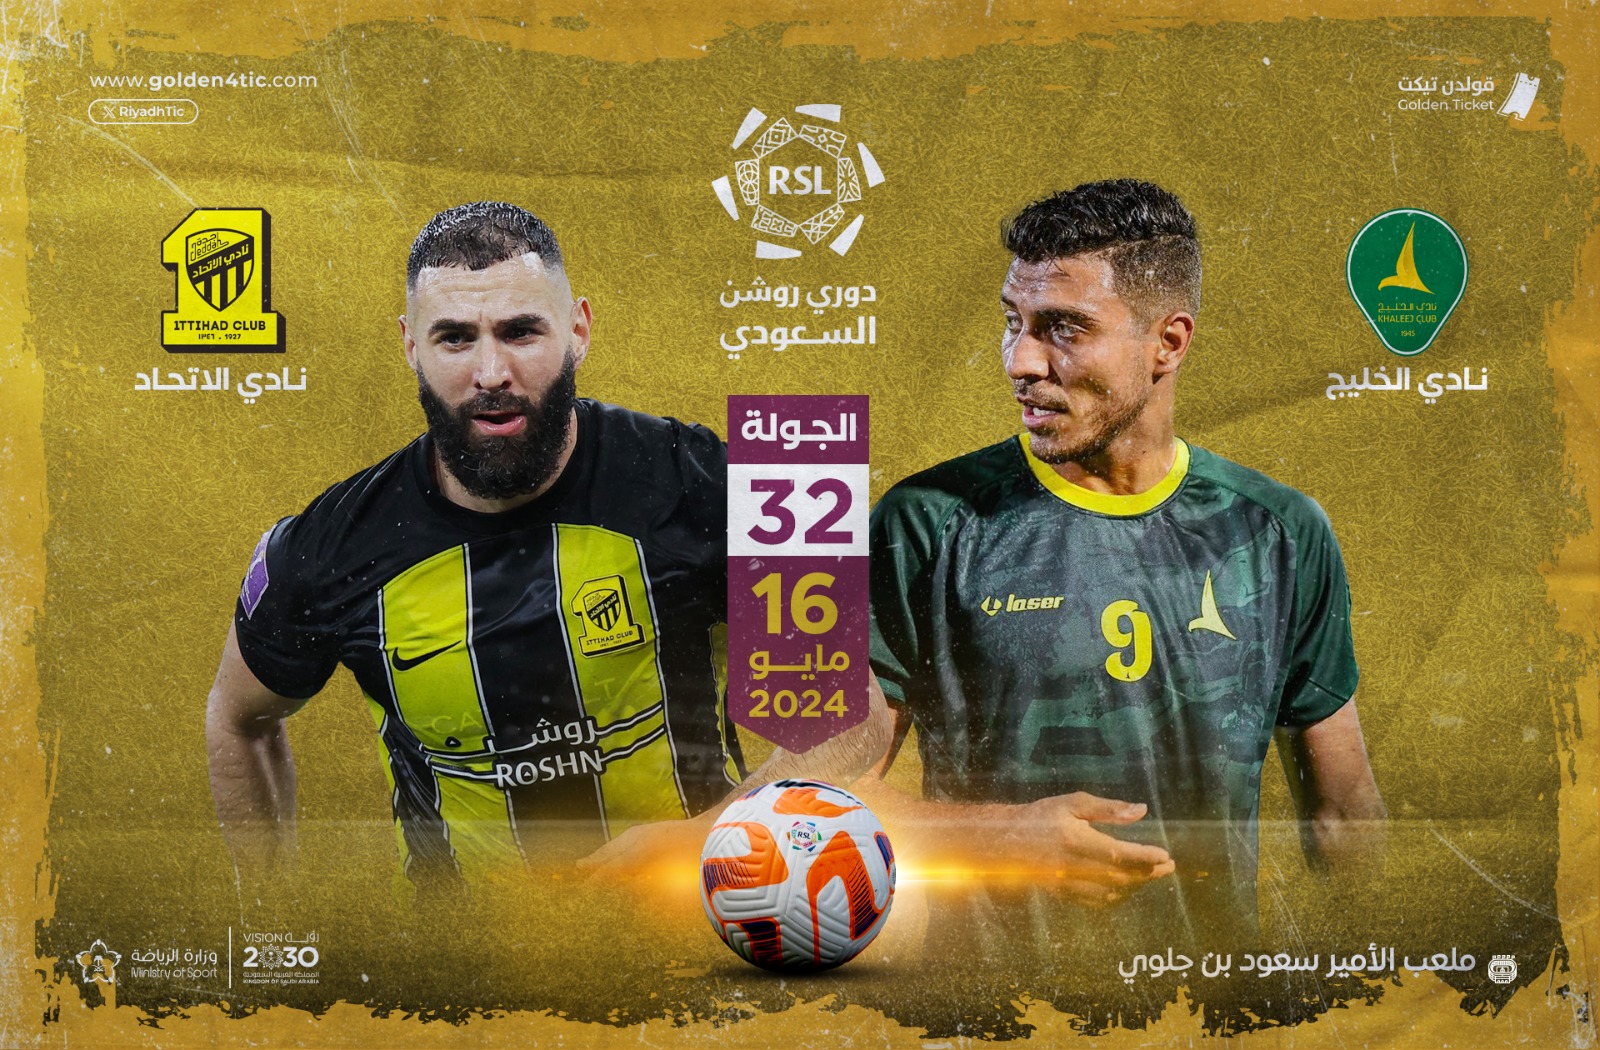 مباراة الخليج و الاتحاد في ذوري روشن الجولة 32